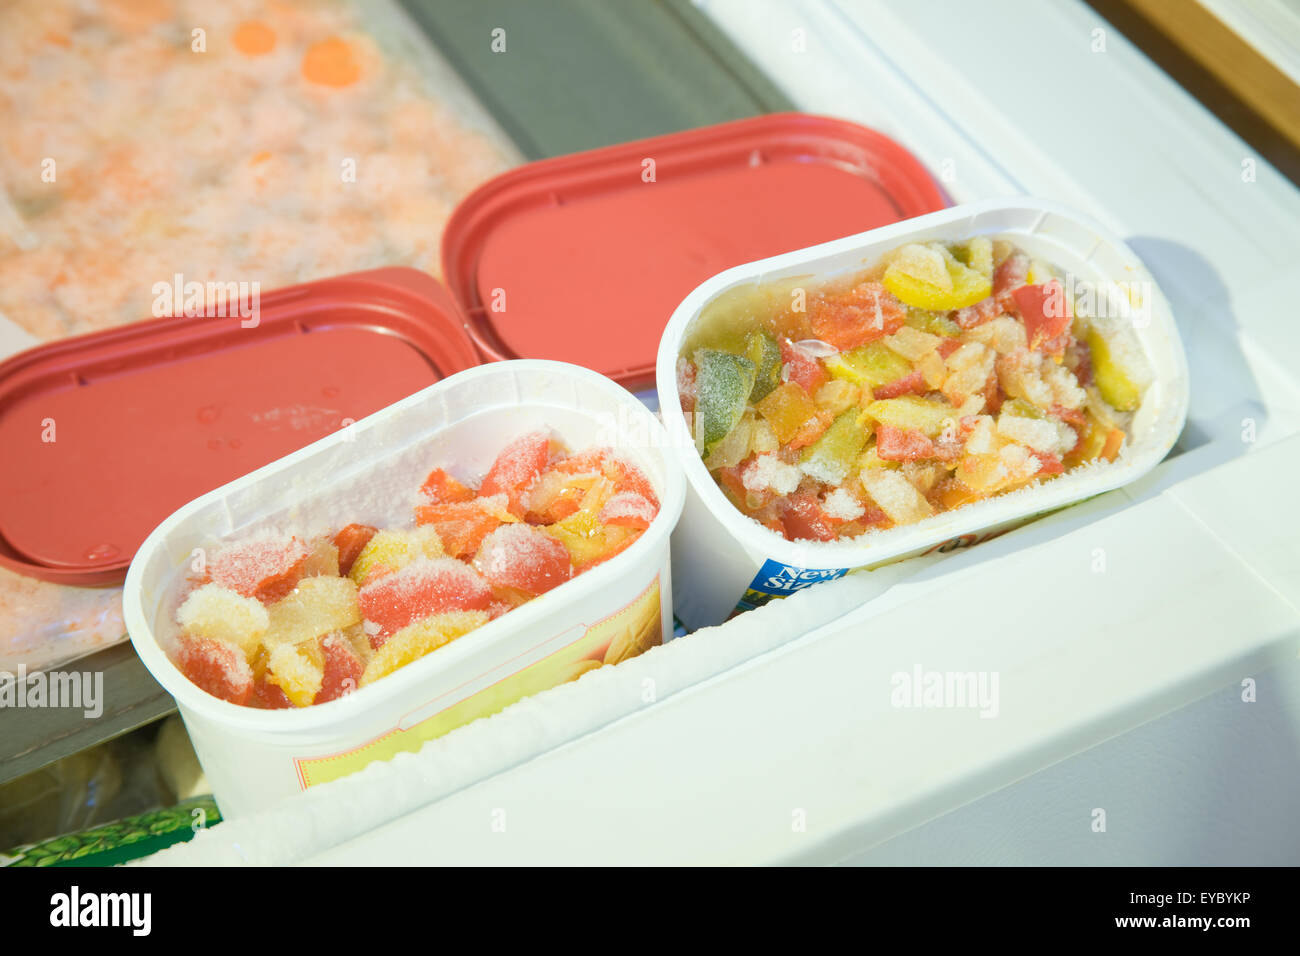 https://c8.alamy.com/comp/EYBYKP/open-containers-of-frozen-mixed-vegetables-in-an-open-deep-freezer-EYBYKP.jpg